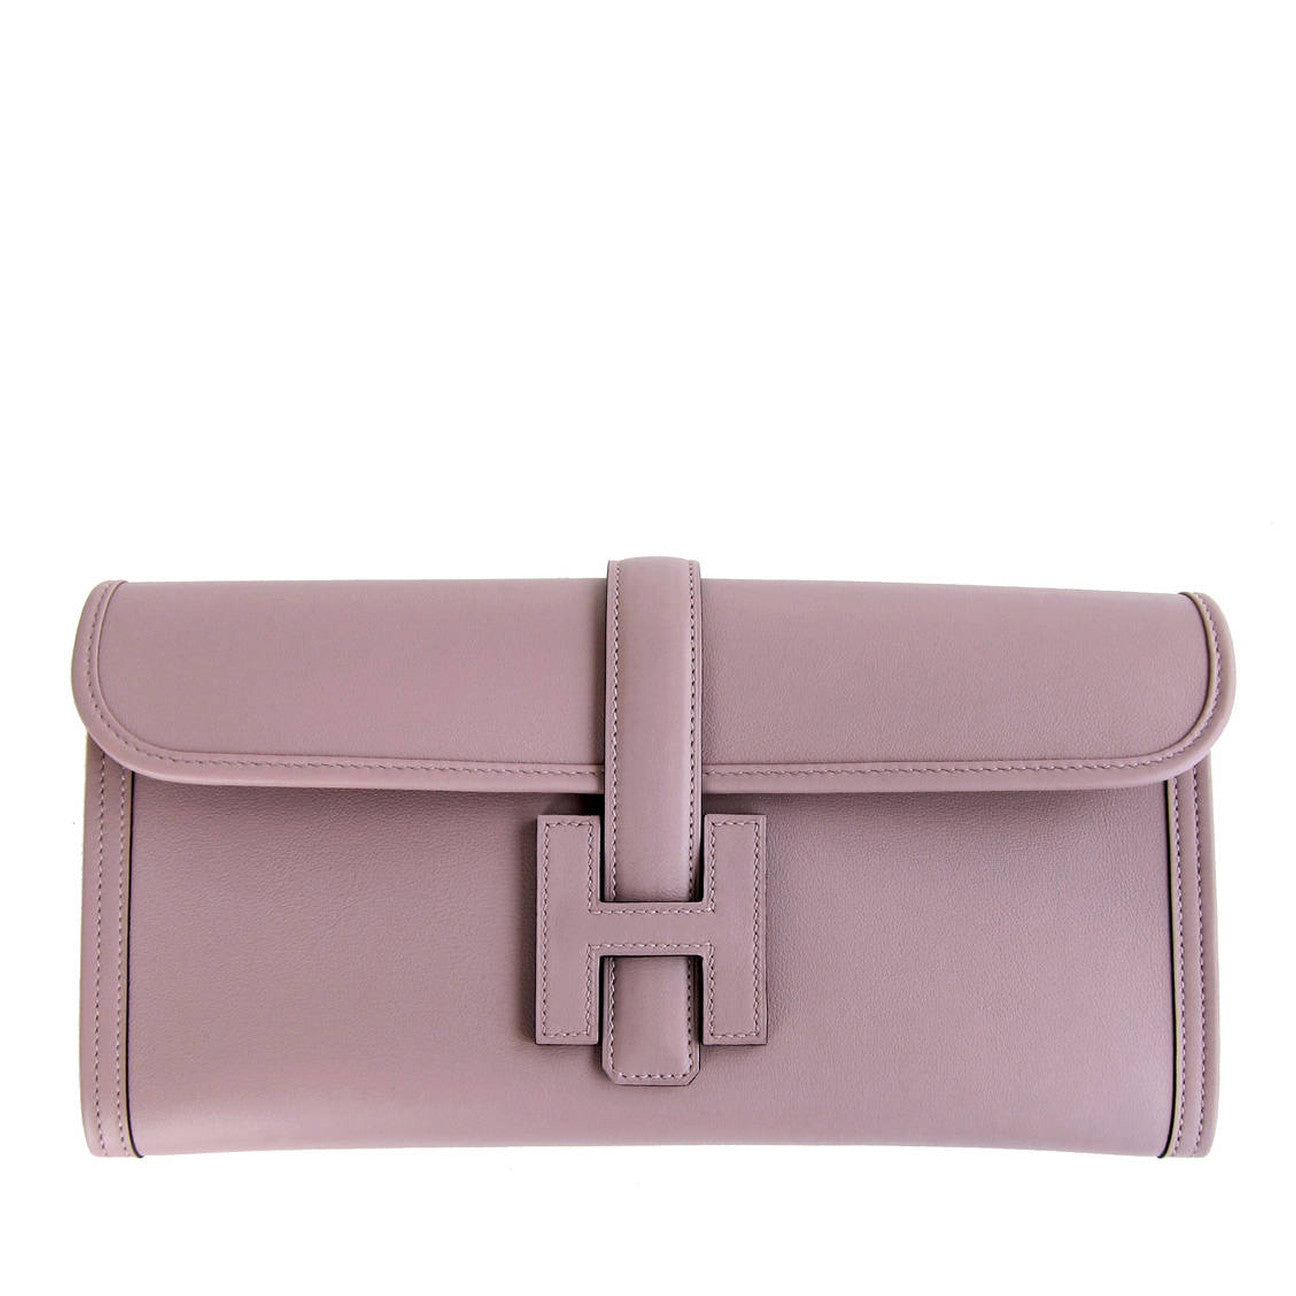 Brand New Hermes Kelly Pochette Bag Mini Swift Glycine